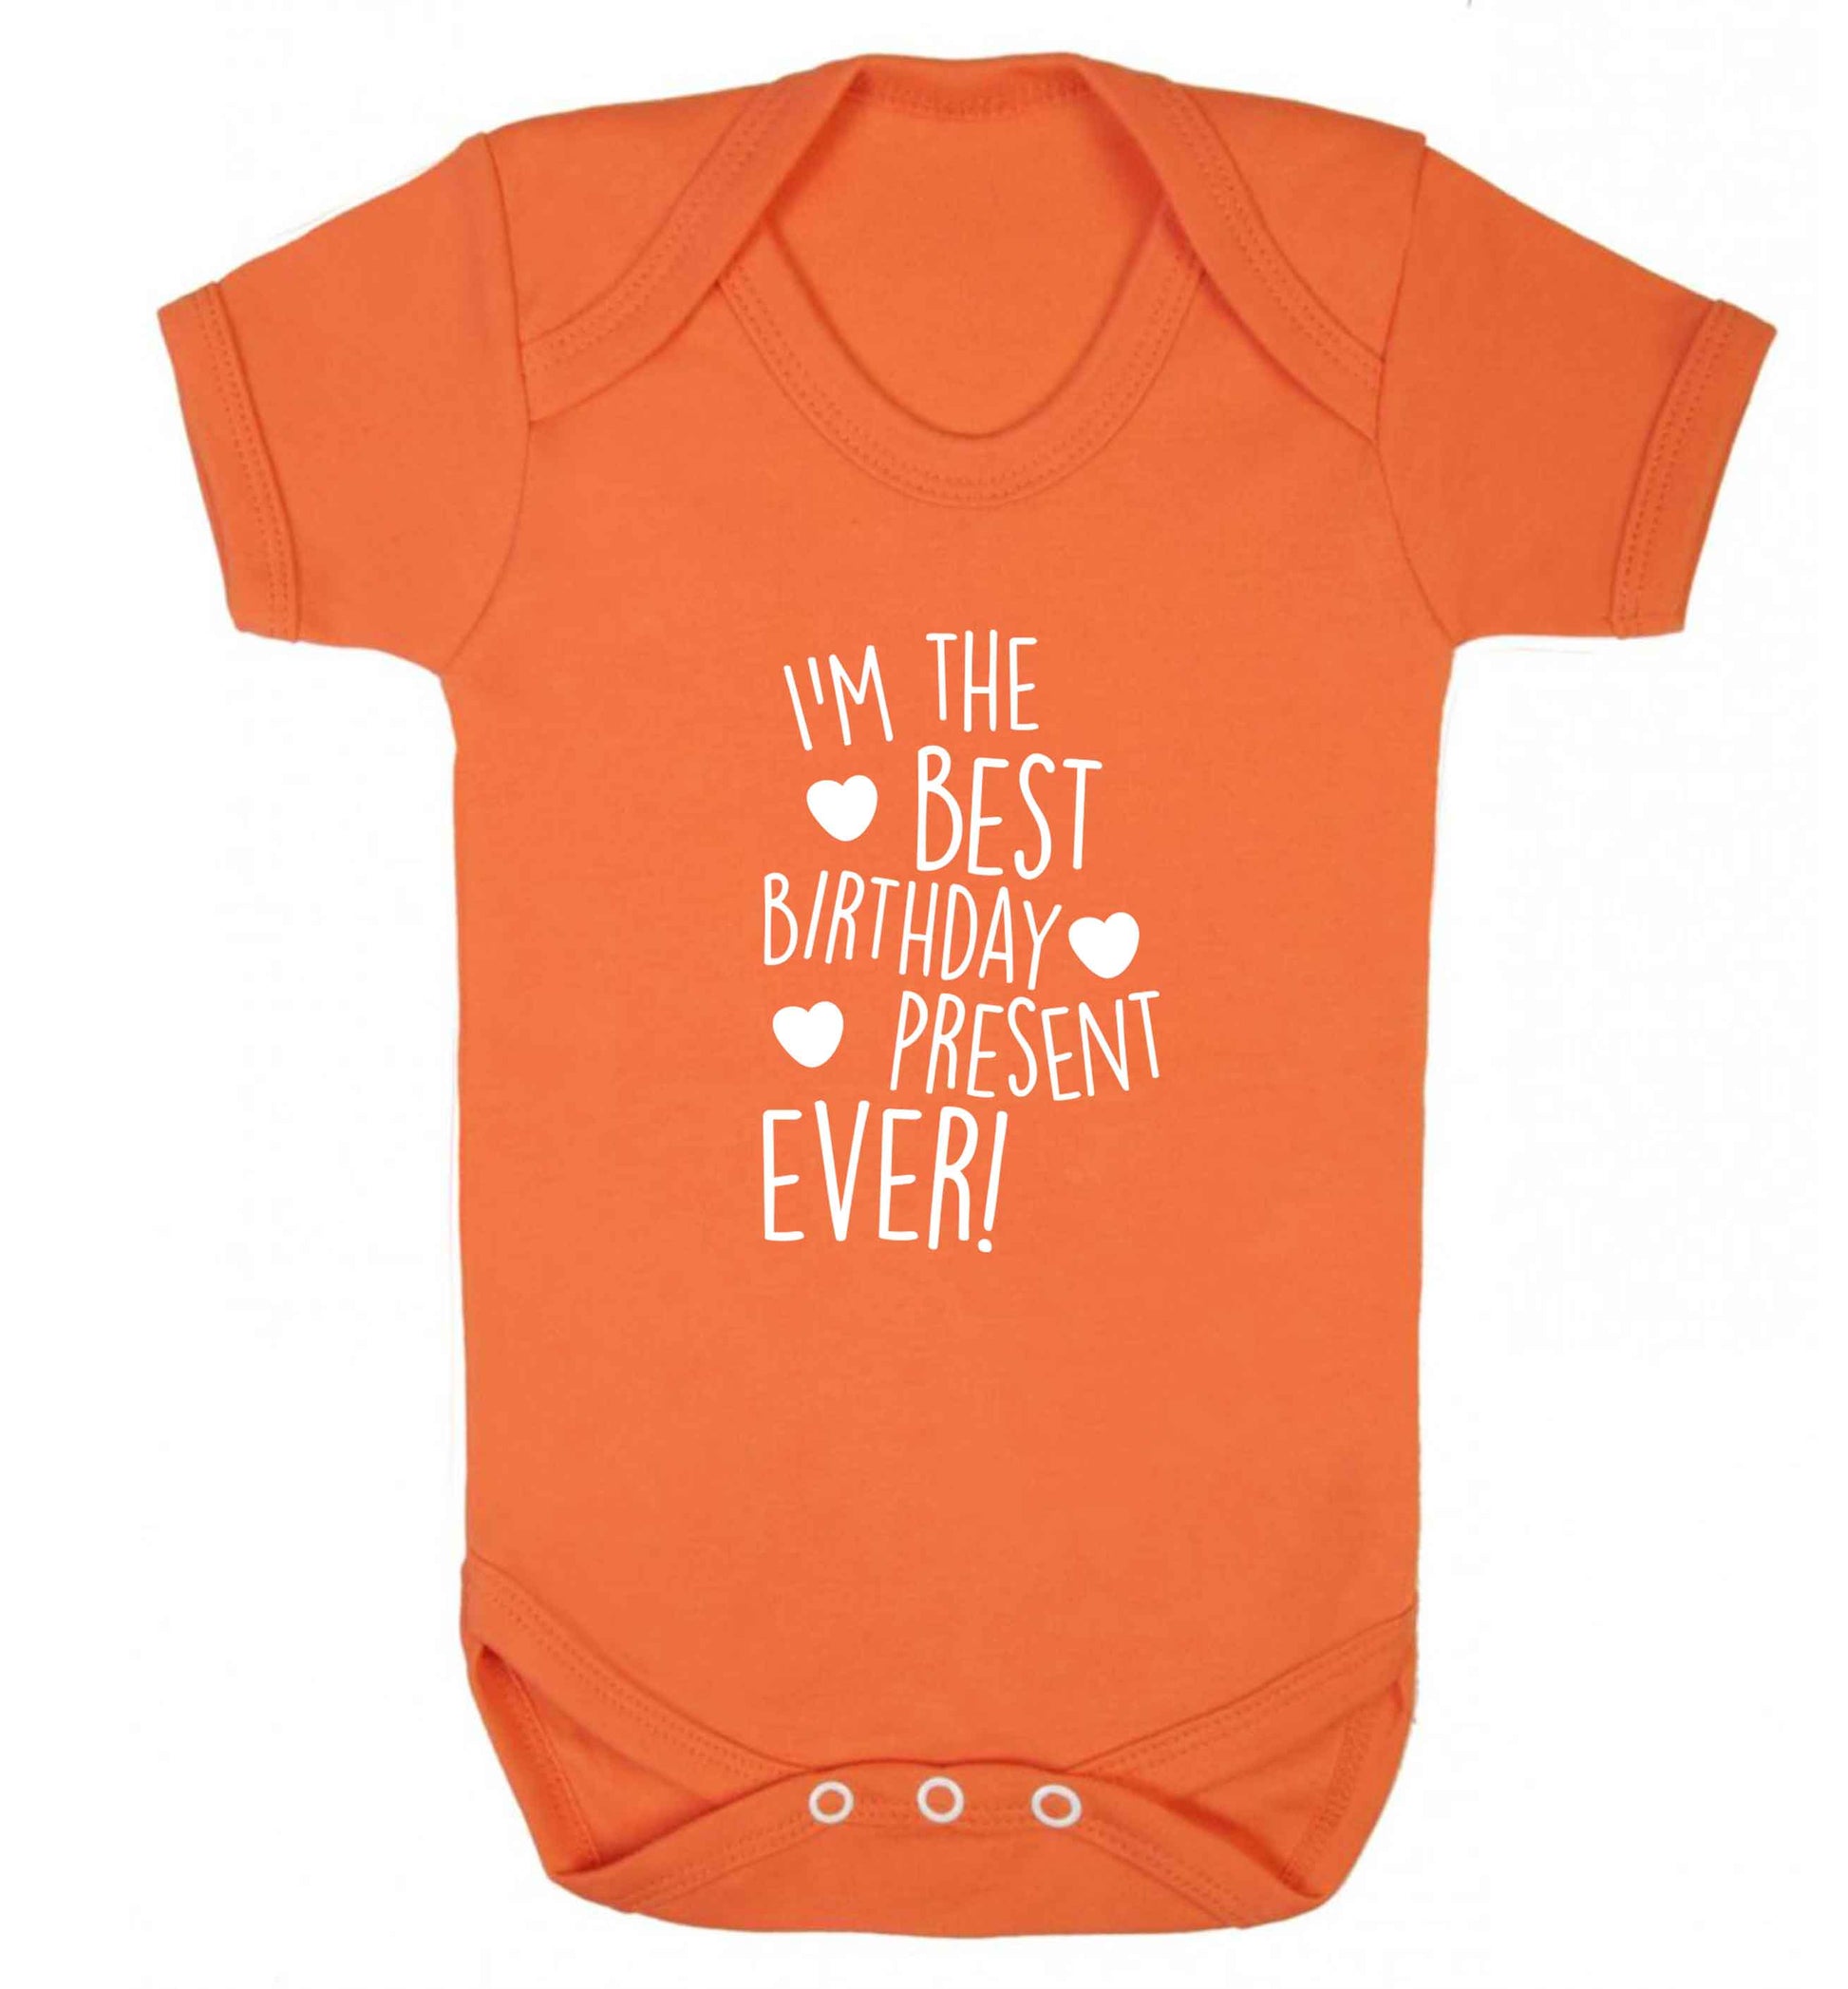 I'm the best birthday present ever baby vest orange 18-24 months